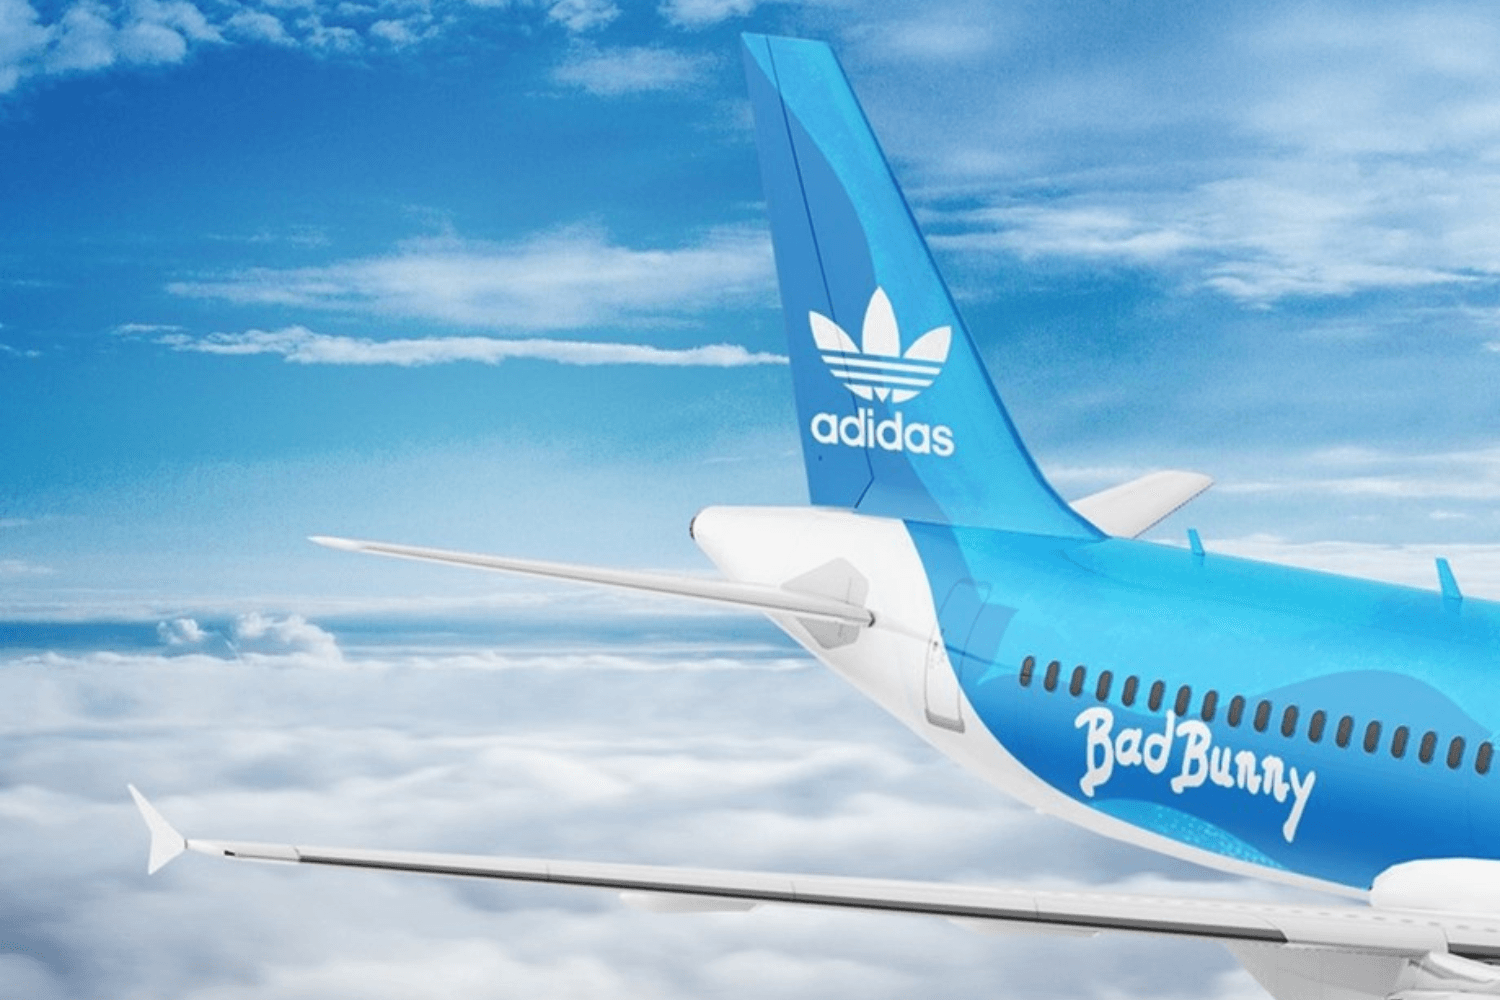 Bad Bunny en adidas laten fans naar Puerto Rico vliegen